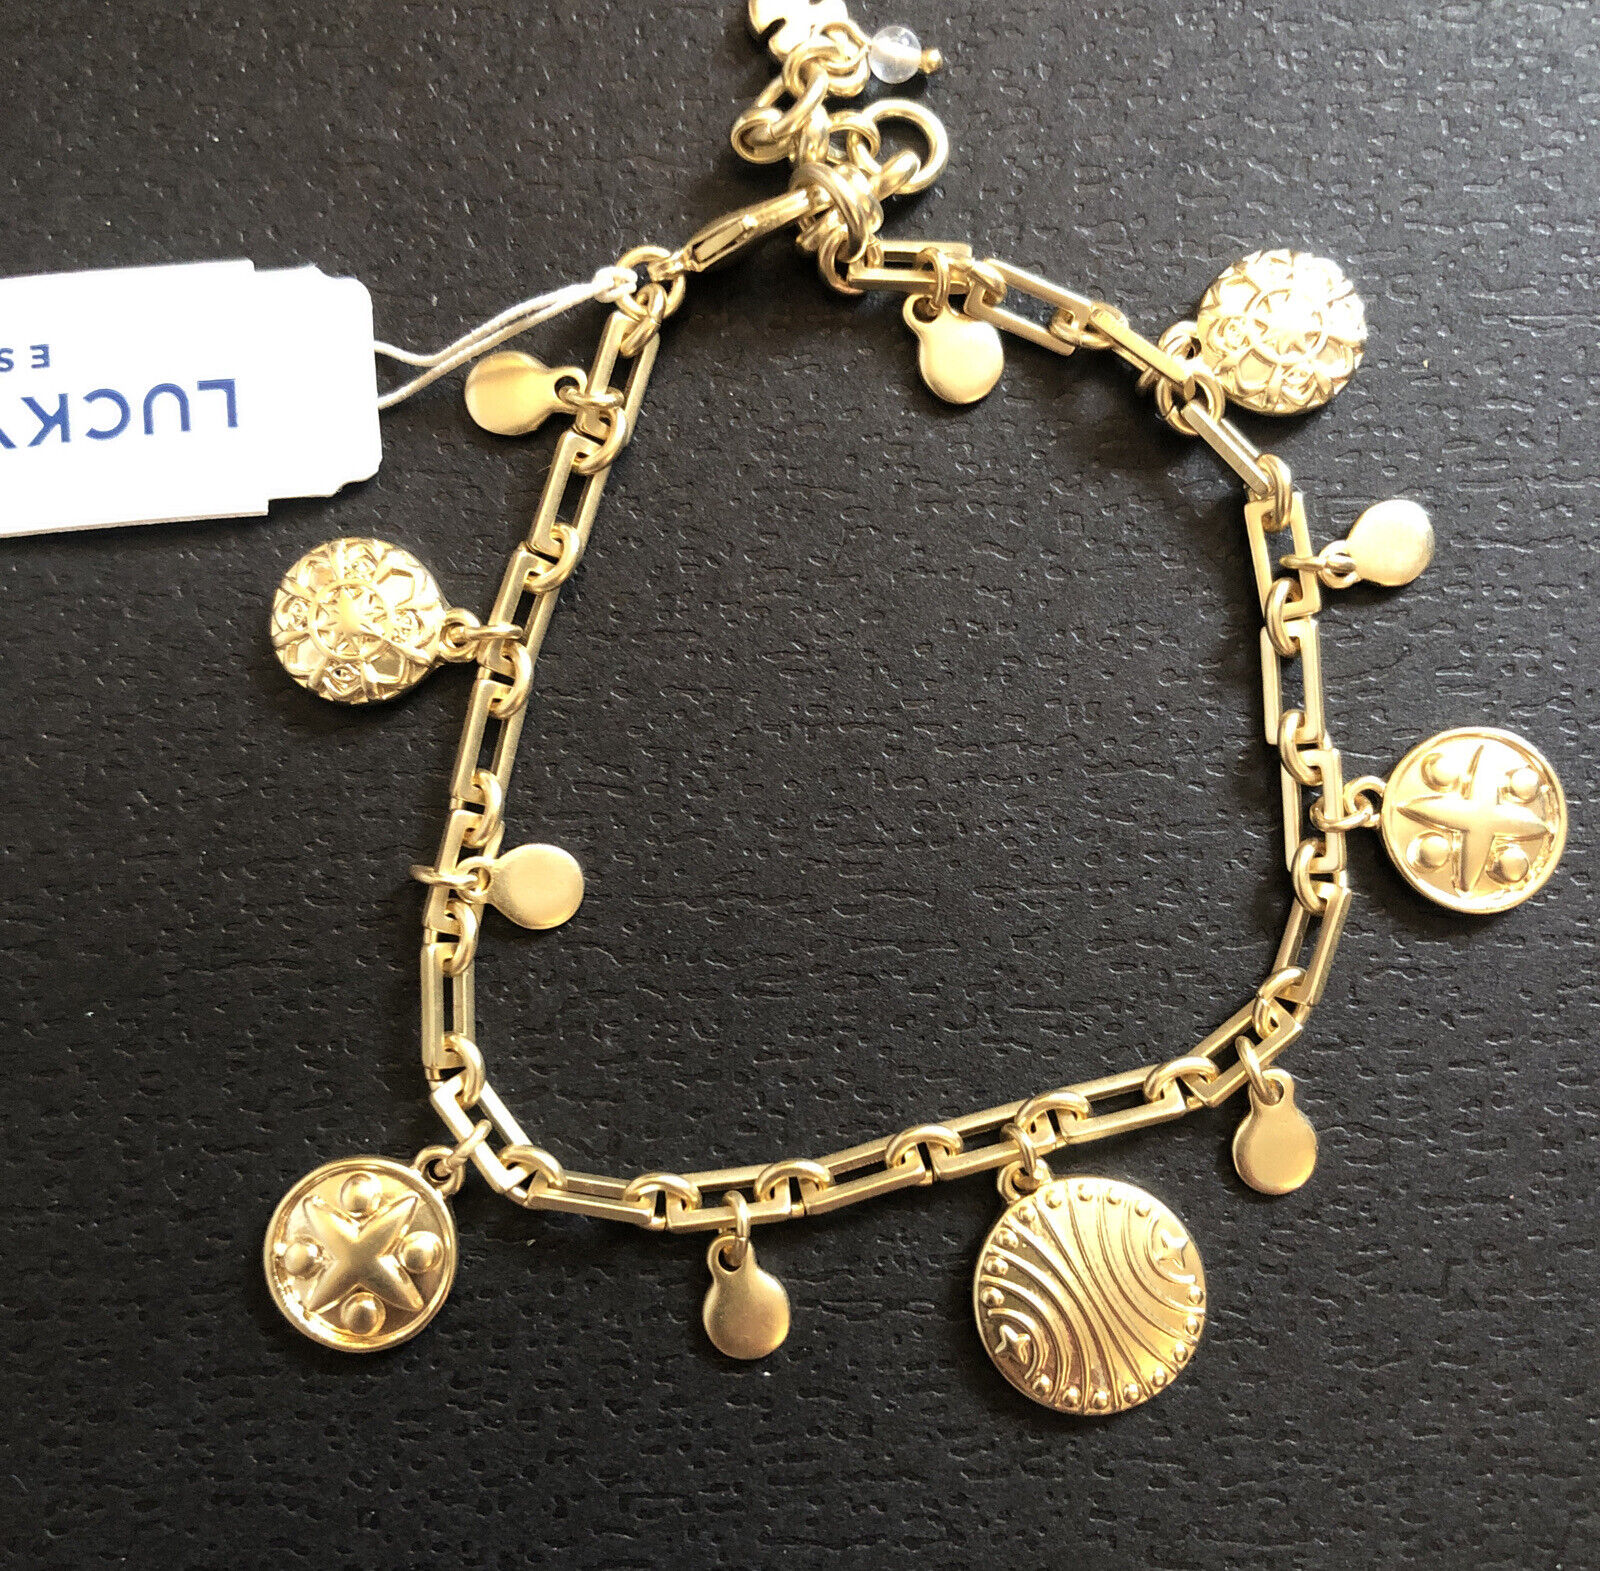 $35 Lucky Brand Openeork Petal Flex Bracelet #27 | eBay